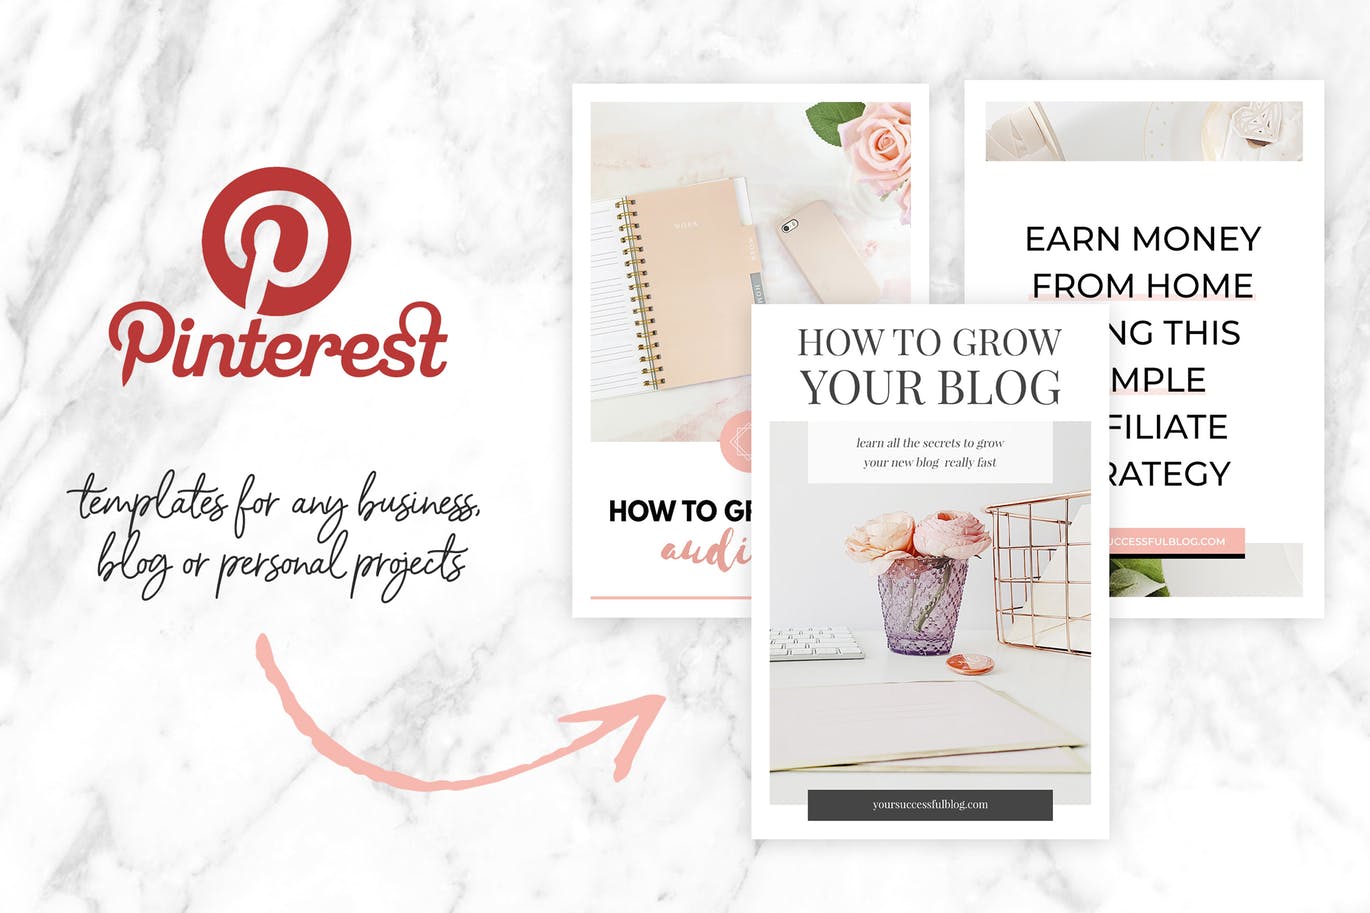 10款粉色主题Pinterest社交贴图广告设计模板第一素材精选v2 Canva Pinterest Templates V.2插图(1)